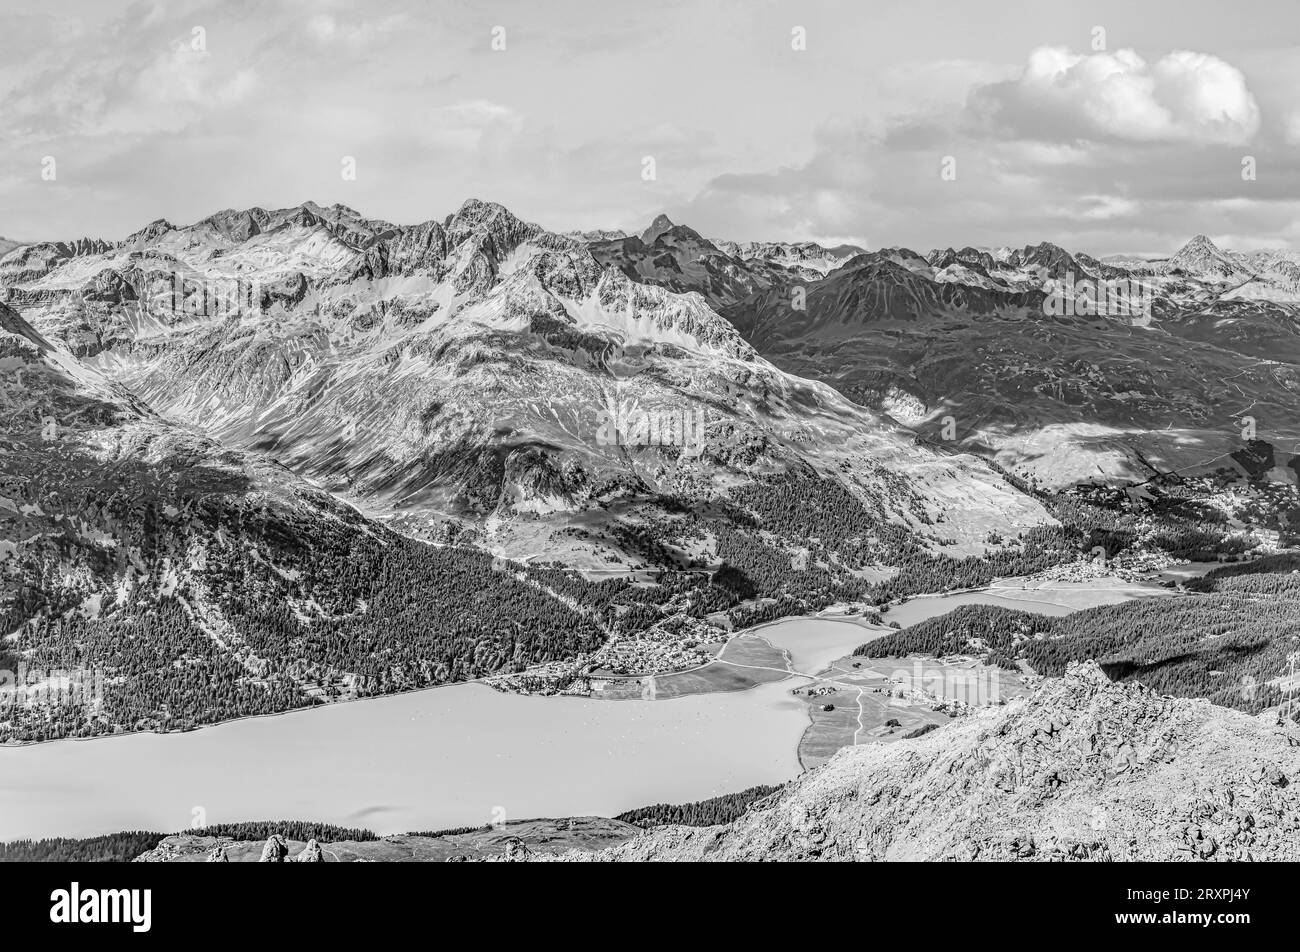 Vue aérienne vers Silvaplana vue du Corvatsch, vallée de l'Engadine, Suisse en noir et blanc Banque D'Images